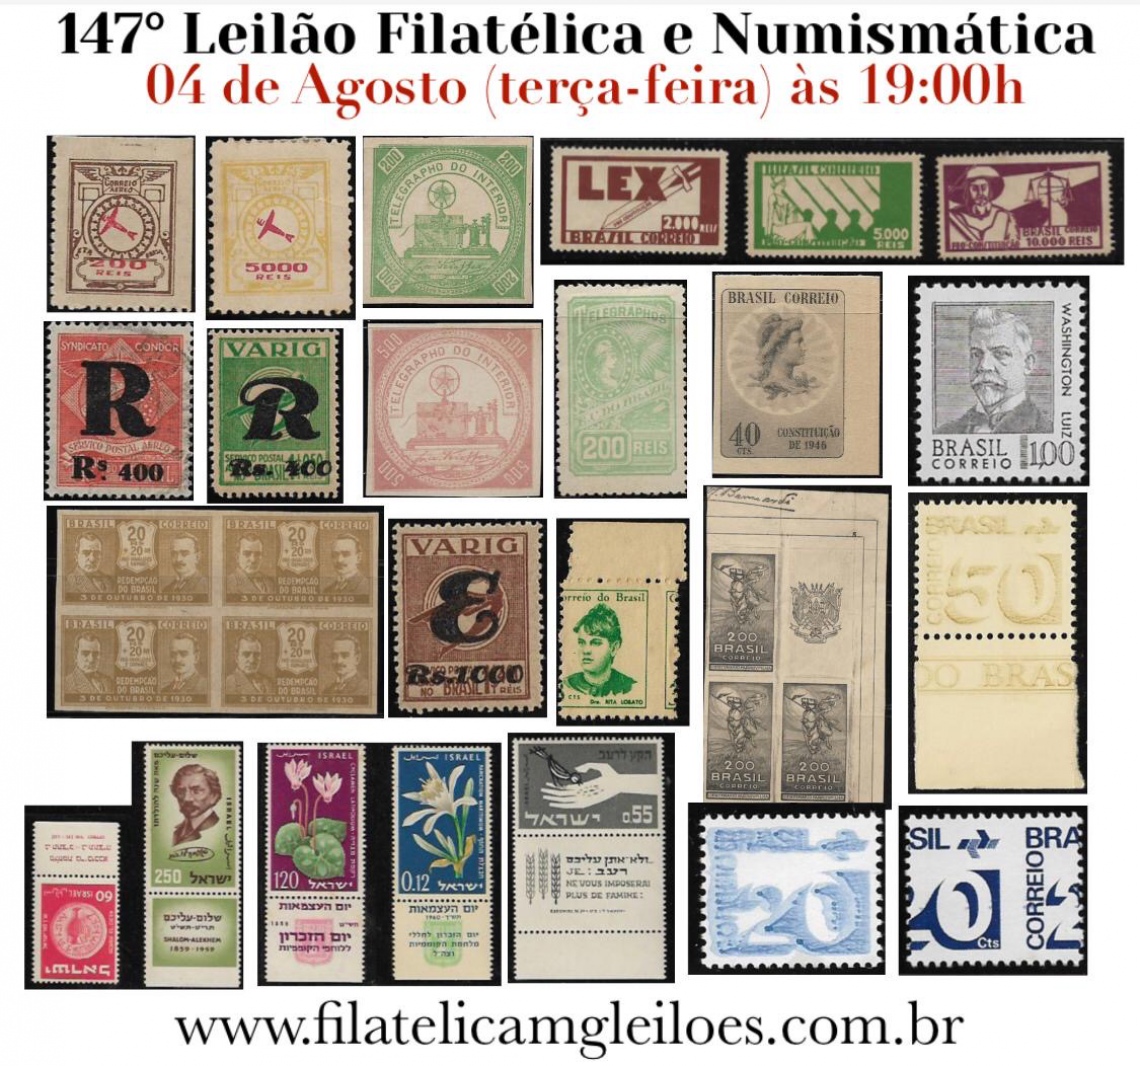 147º Leilão de Filatelia e Numismática